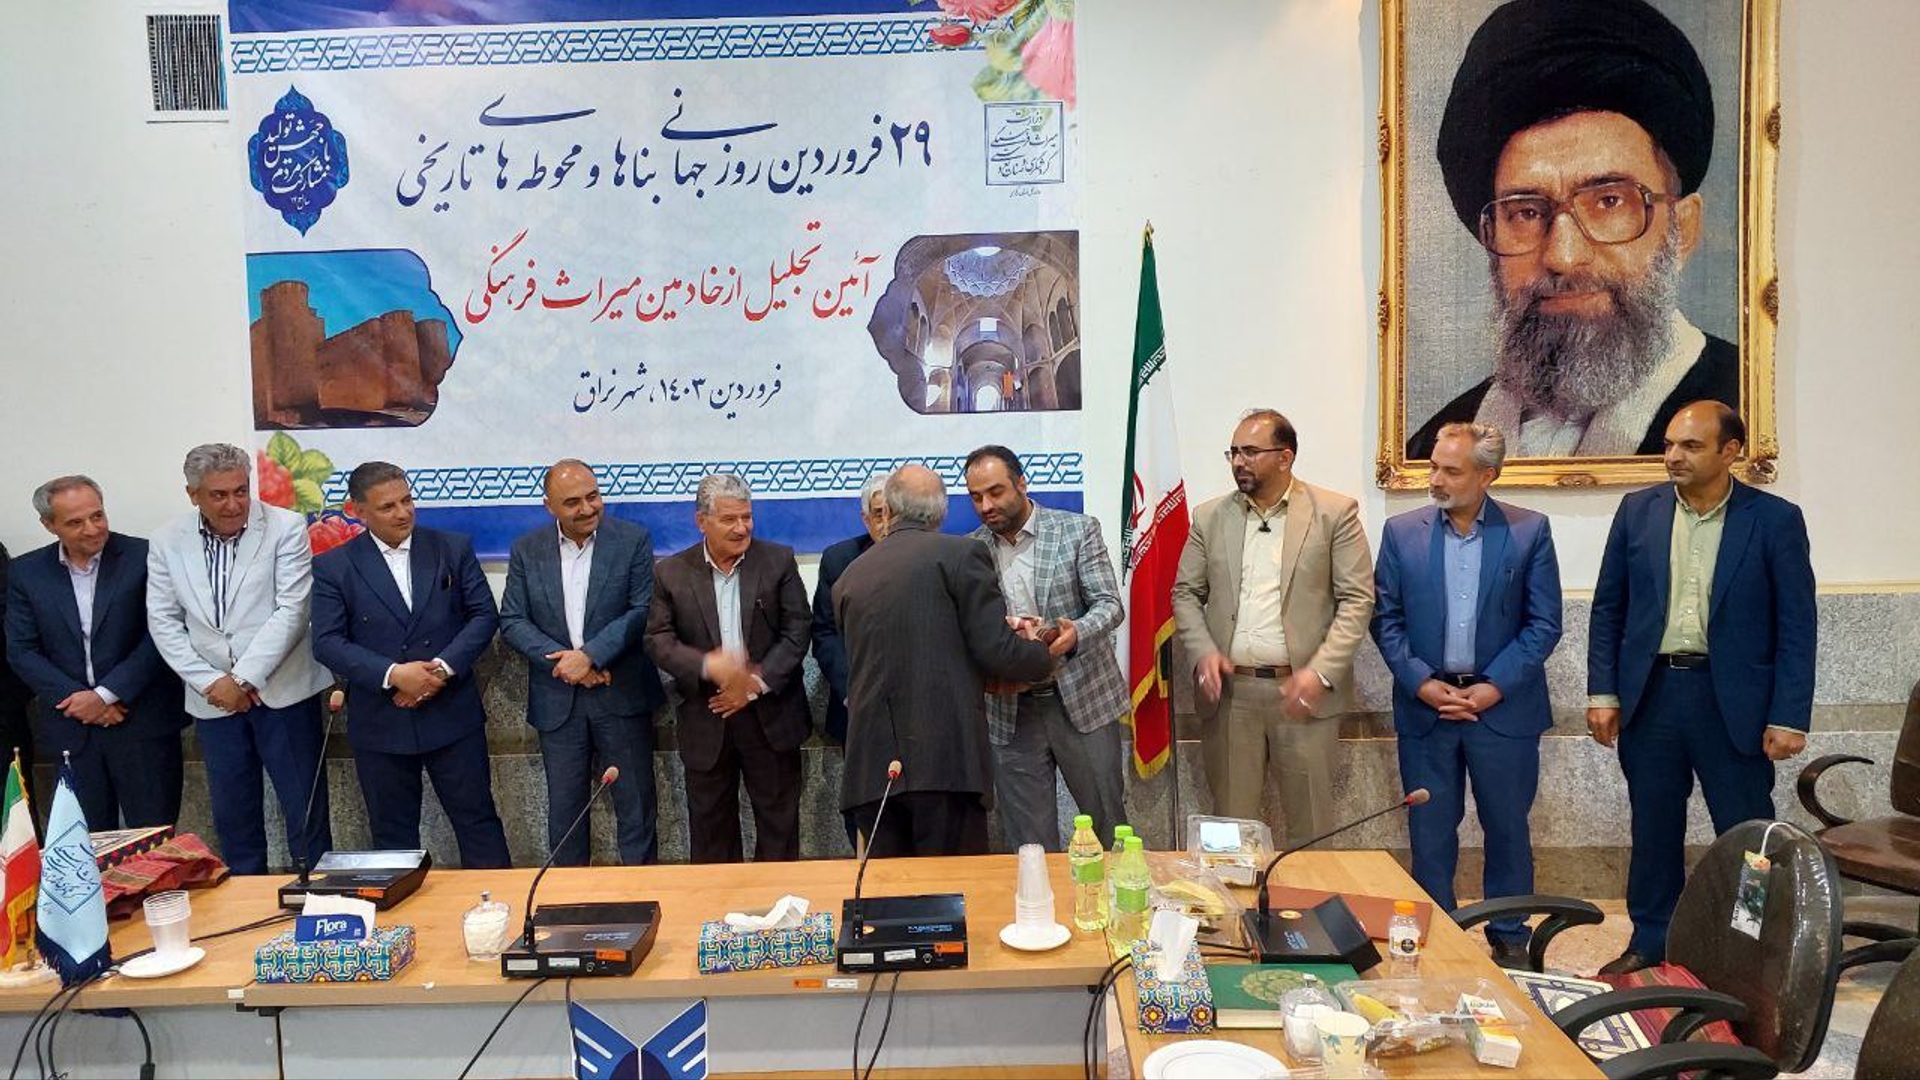 نشست تخصصی روز جهانی بناها و محوطه ها و آیین تجلیل از خادمین میراث فرهنگی در نراق برگزار شد.